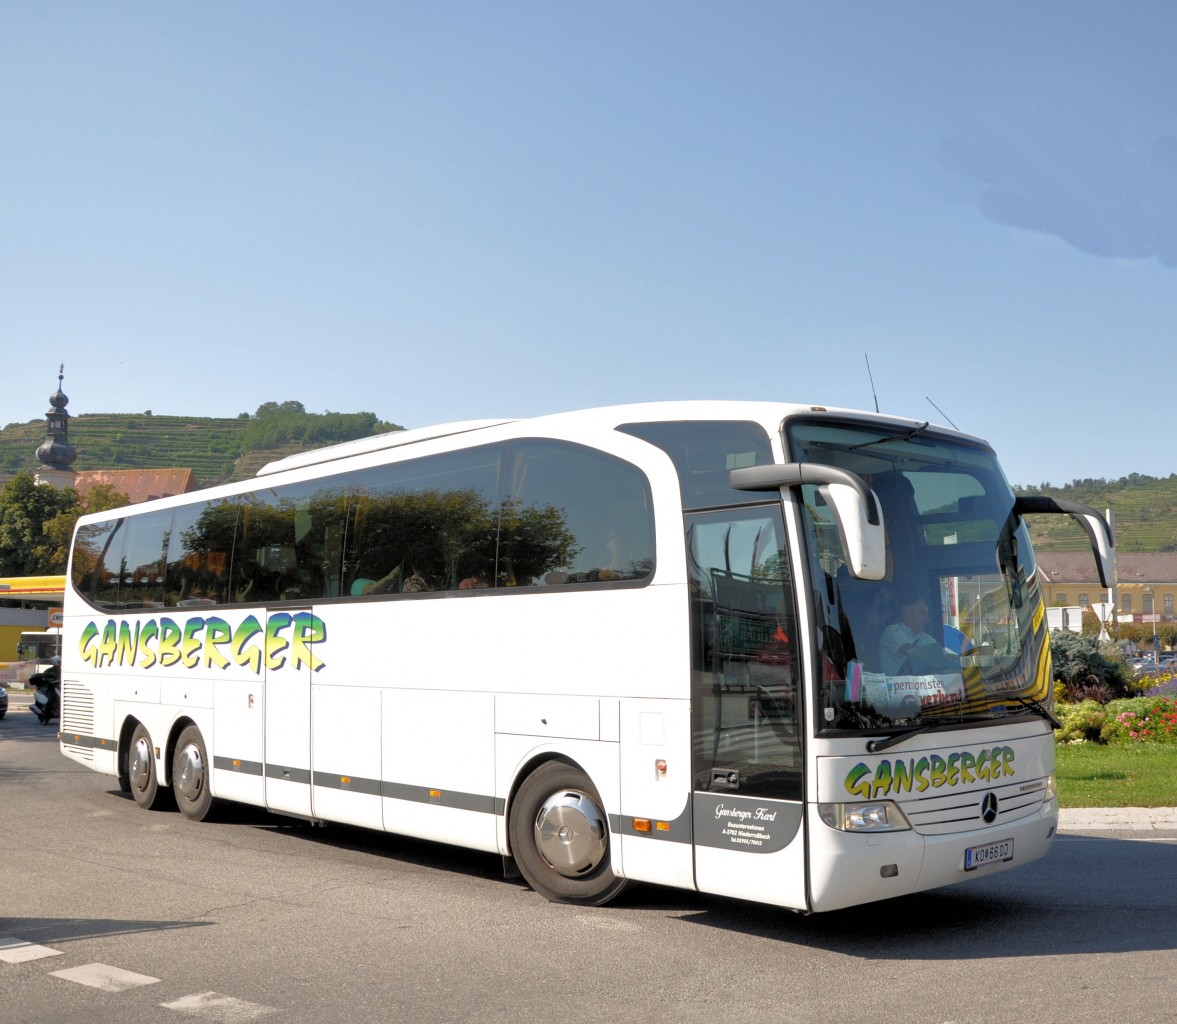 MERCEDES BENZ TRAVEGO von GANSBERGER Reisen/sterreich im September 2013 in Krems unterwegs.